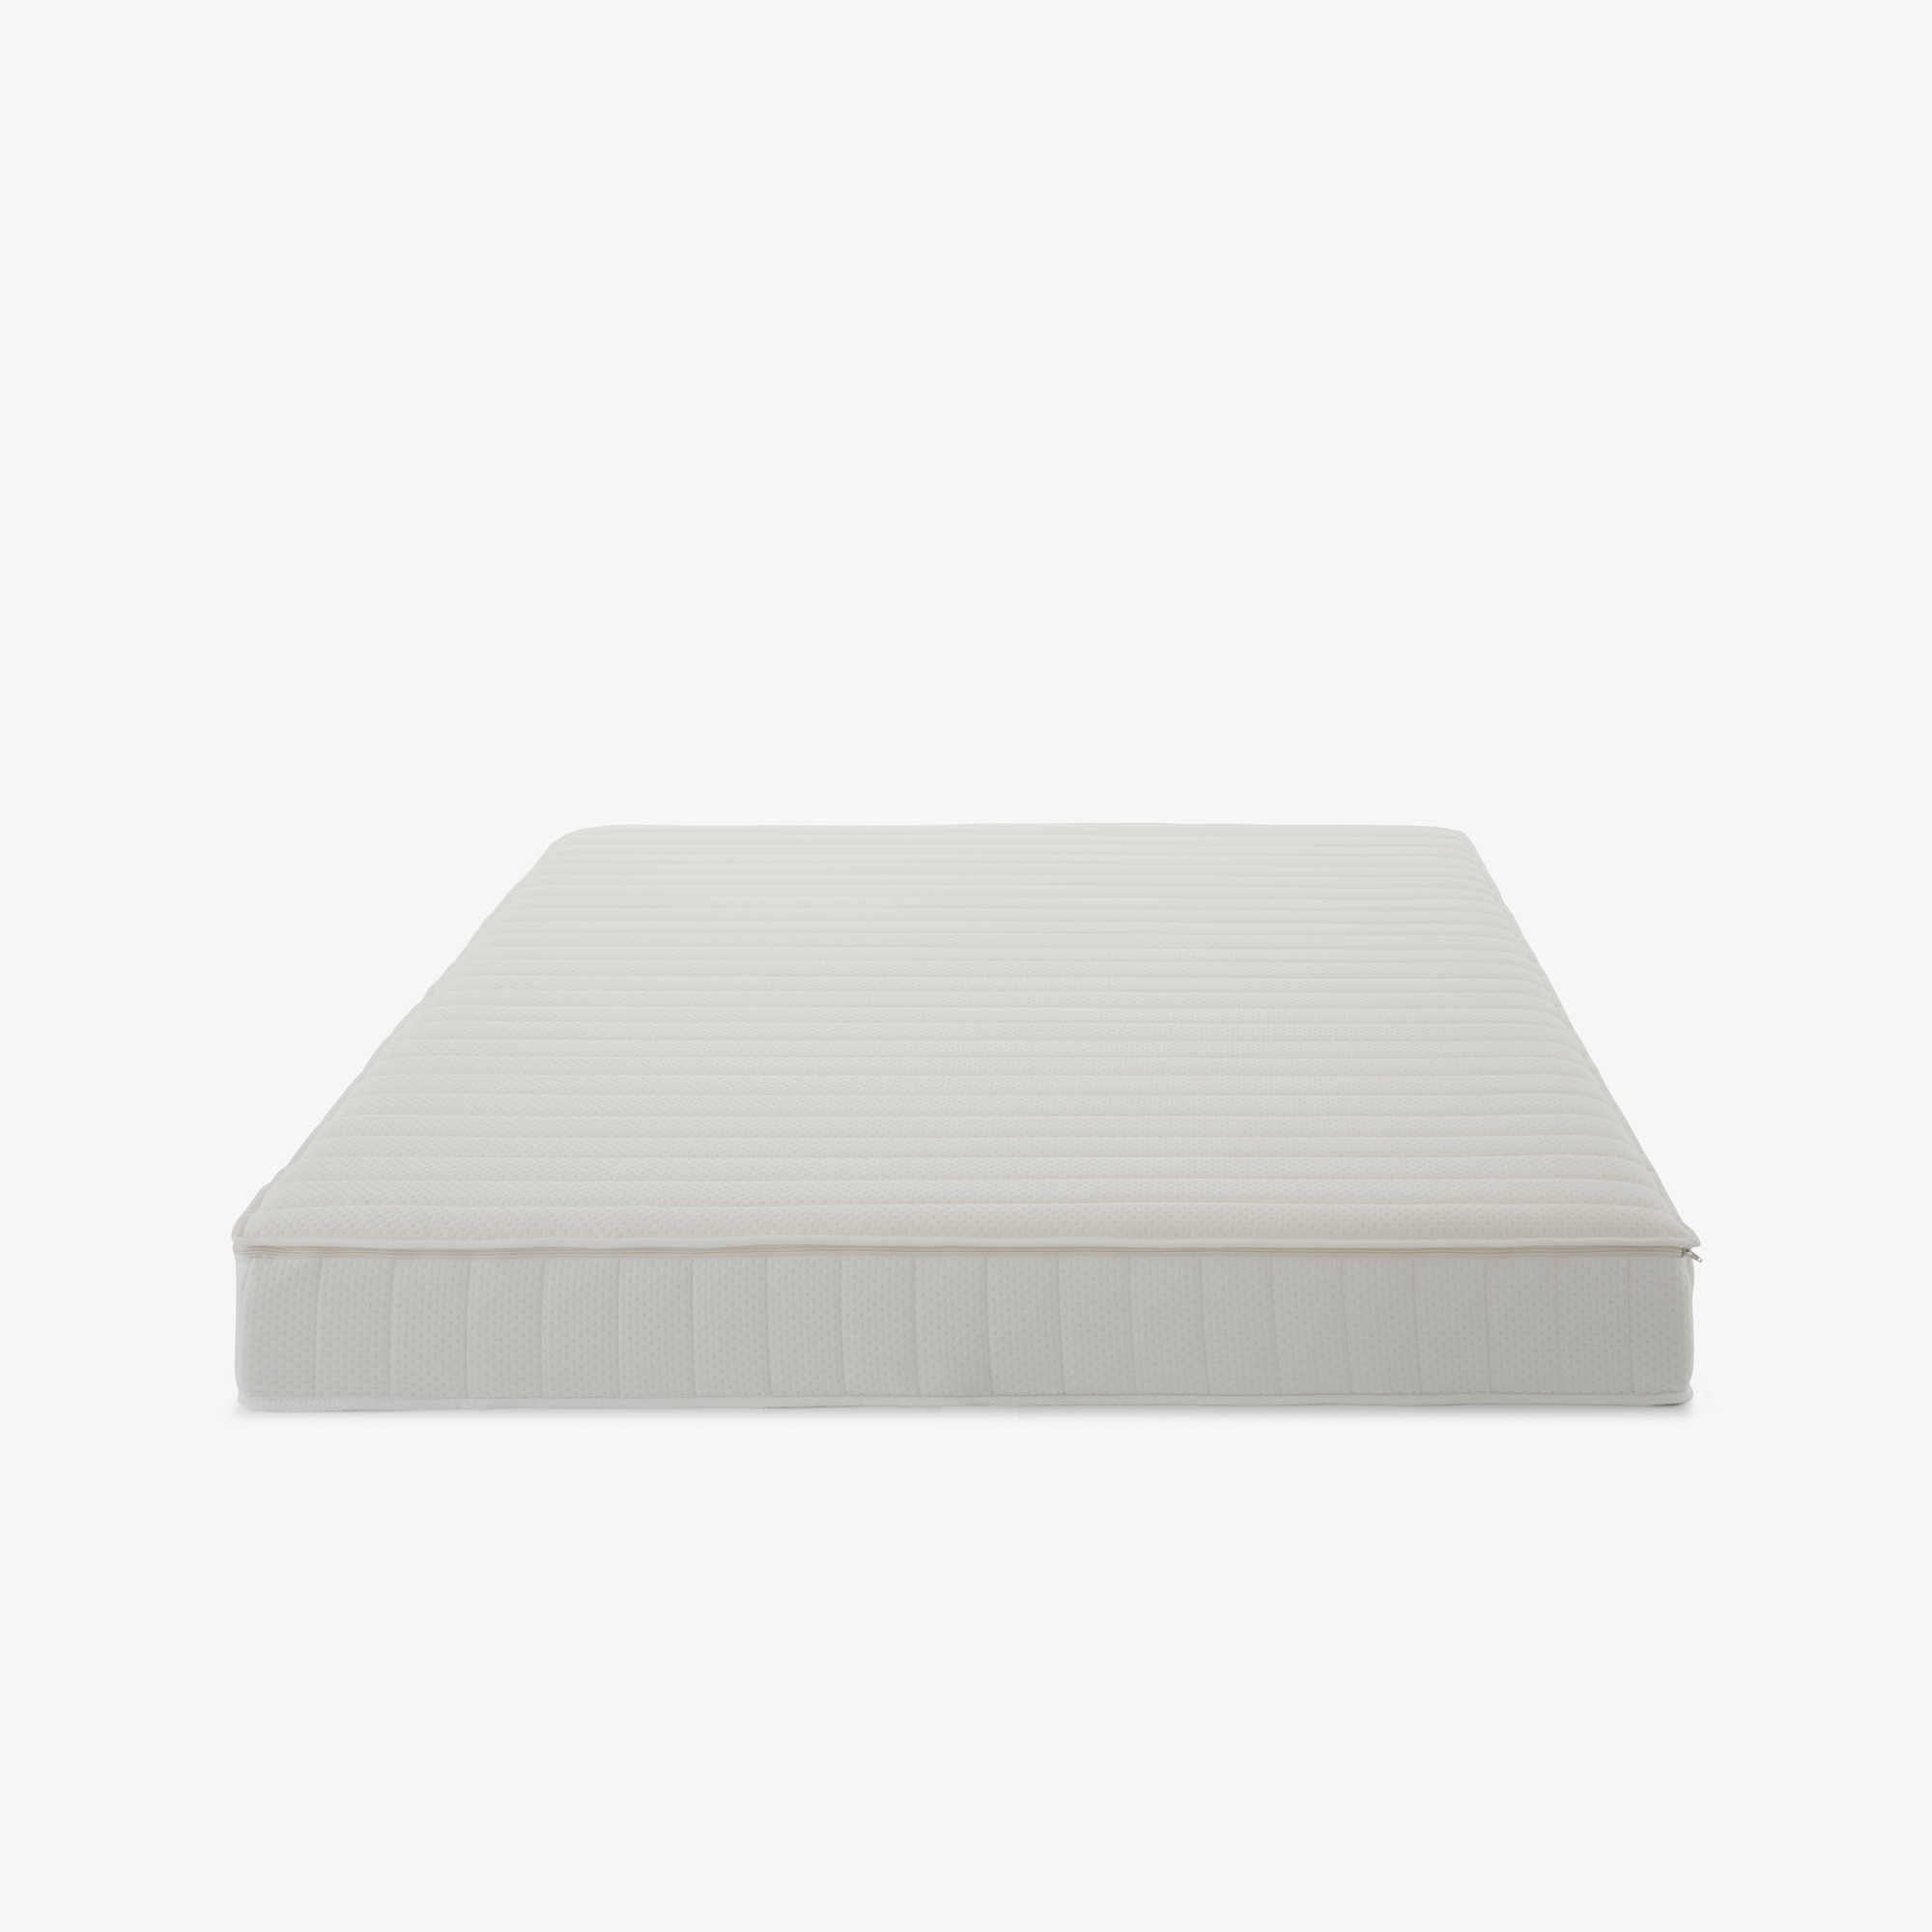 Image BULTEX+粘弹性泡棉（SENSUS）床垫